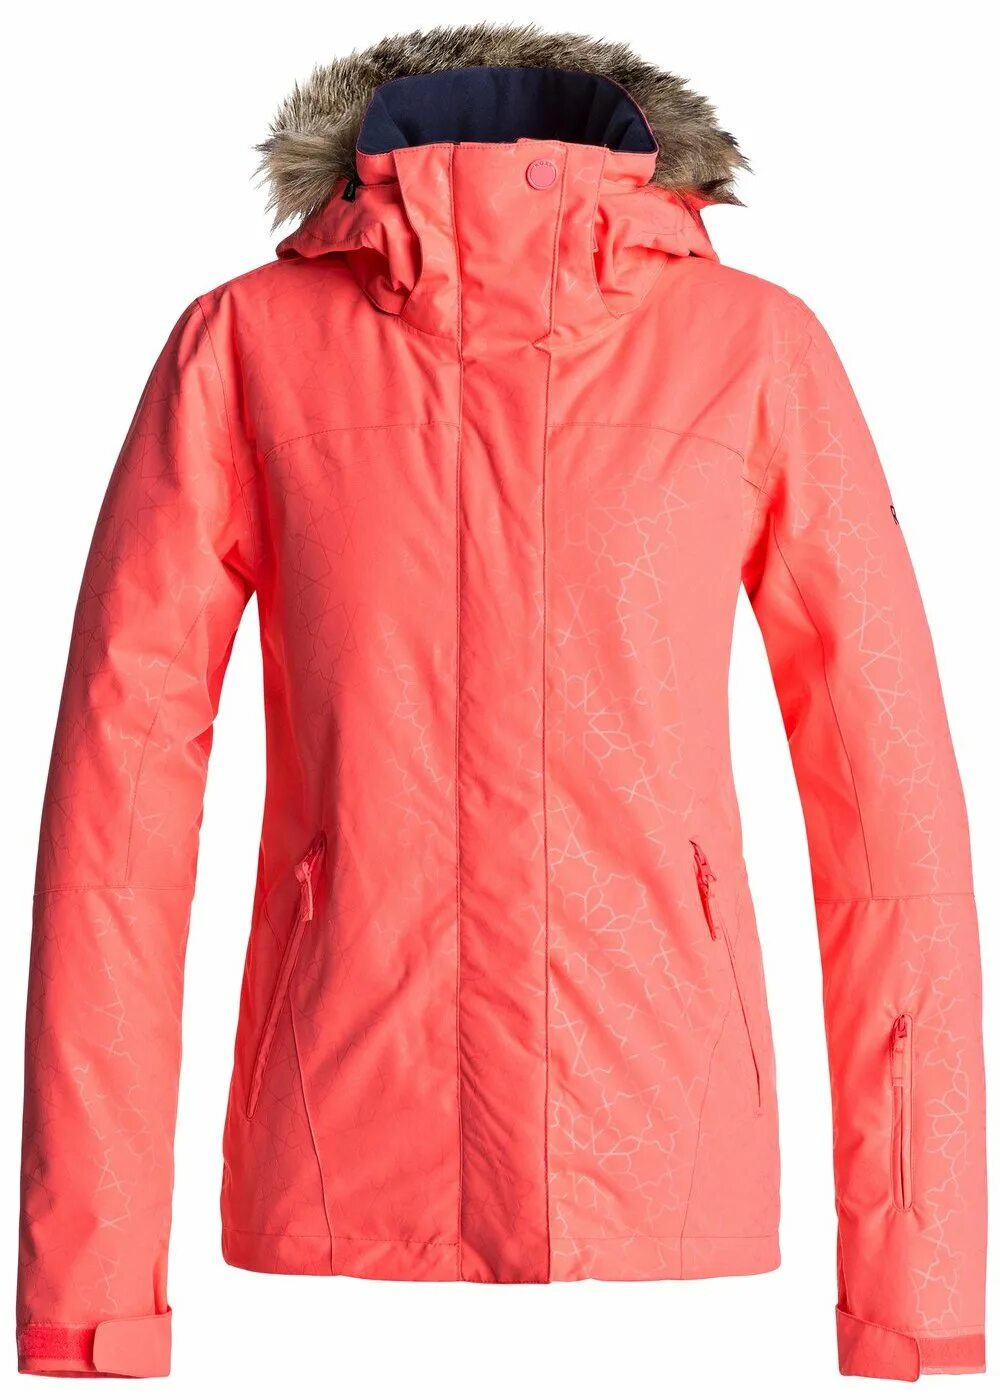 Roxy куртка розовая. Roxy Jet Ski куртка 2017. Сноубордическая куртка Jet Ski модель erjtj03131 красная. Куртка Roxy размер 10, розовый. Roxy куртка сноубордическая Jetski.